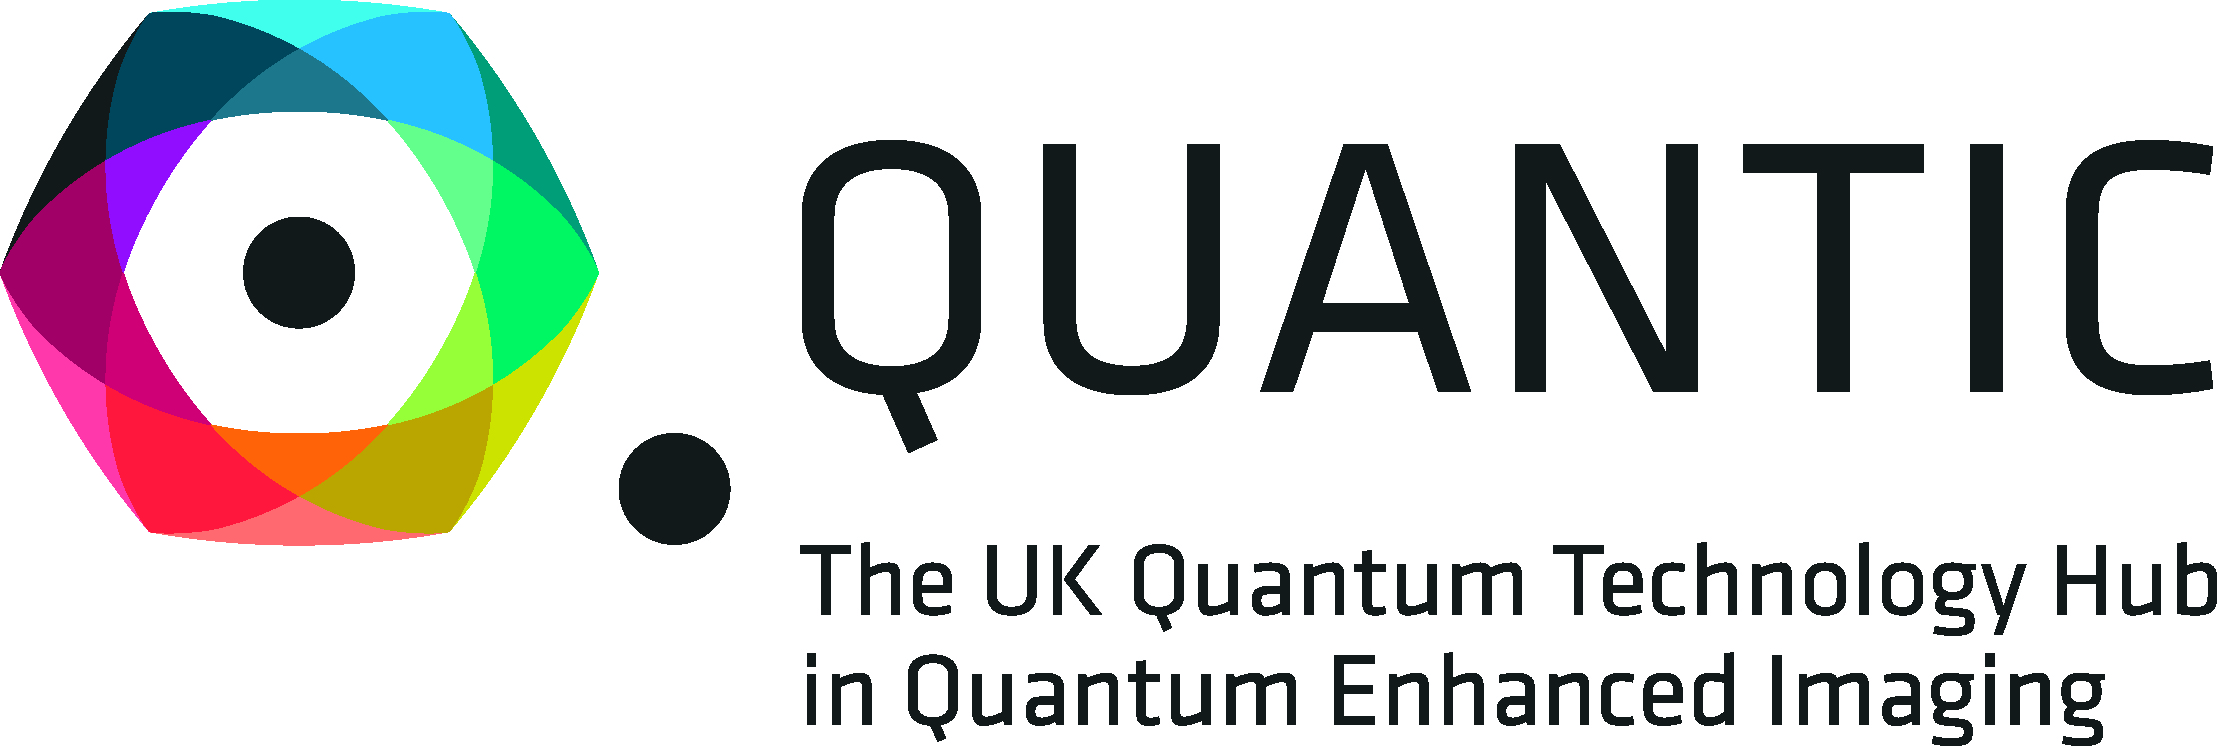 QuantIC Advanced Research Centre